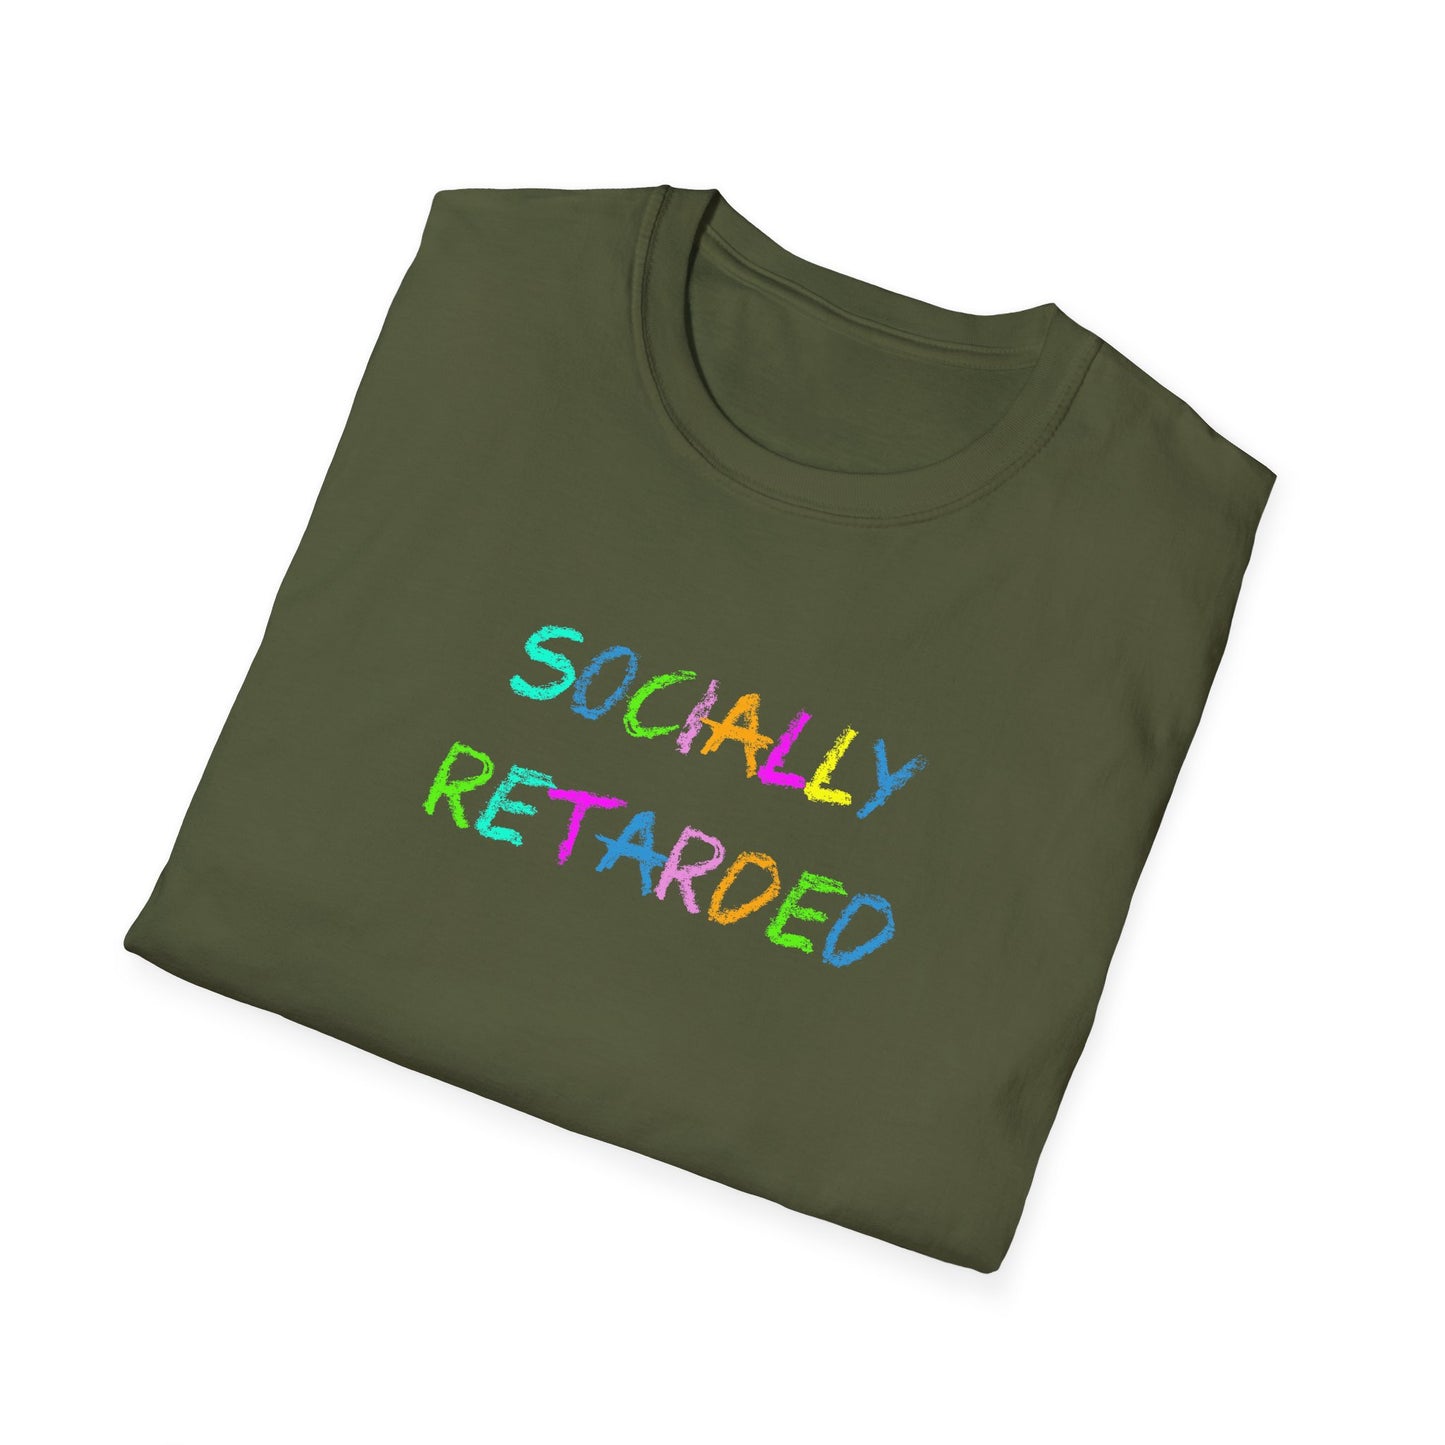 Socially Retarded - T-Shirt